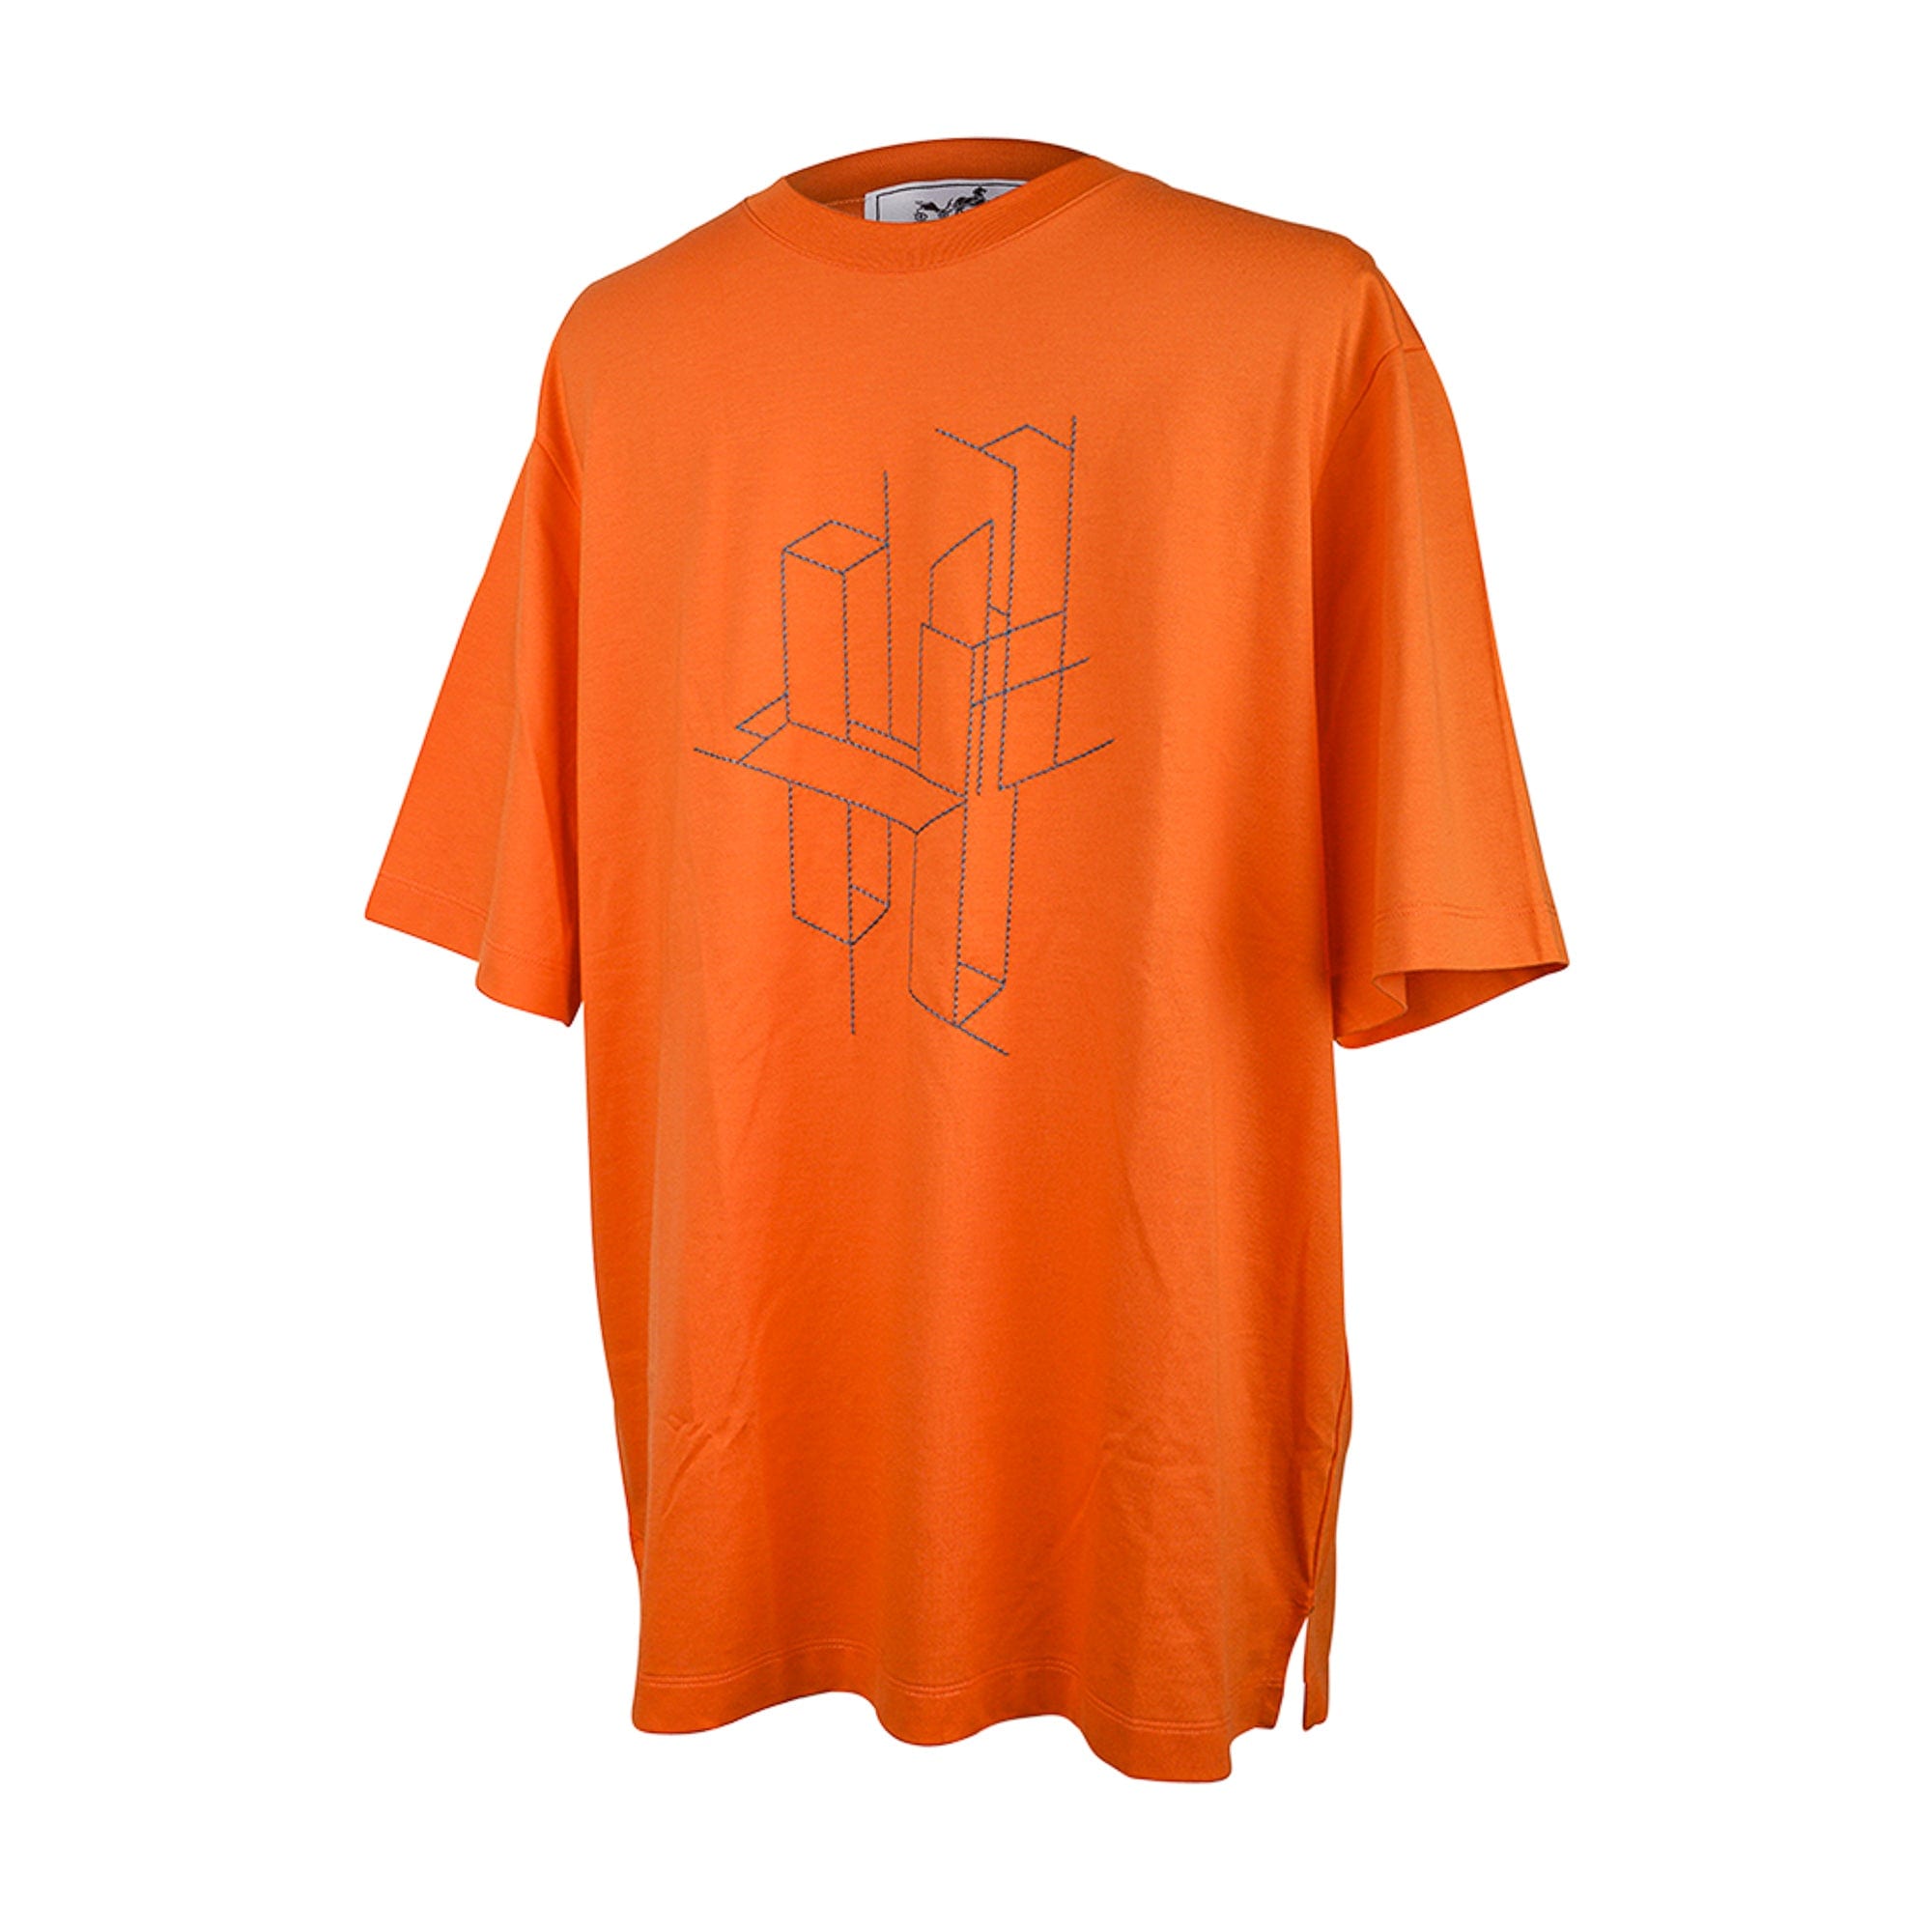 Louis Vuitton Limited Edition 3D T-Shirt Version 3